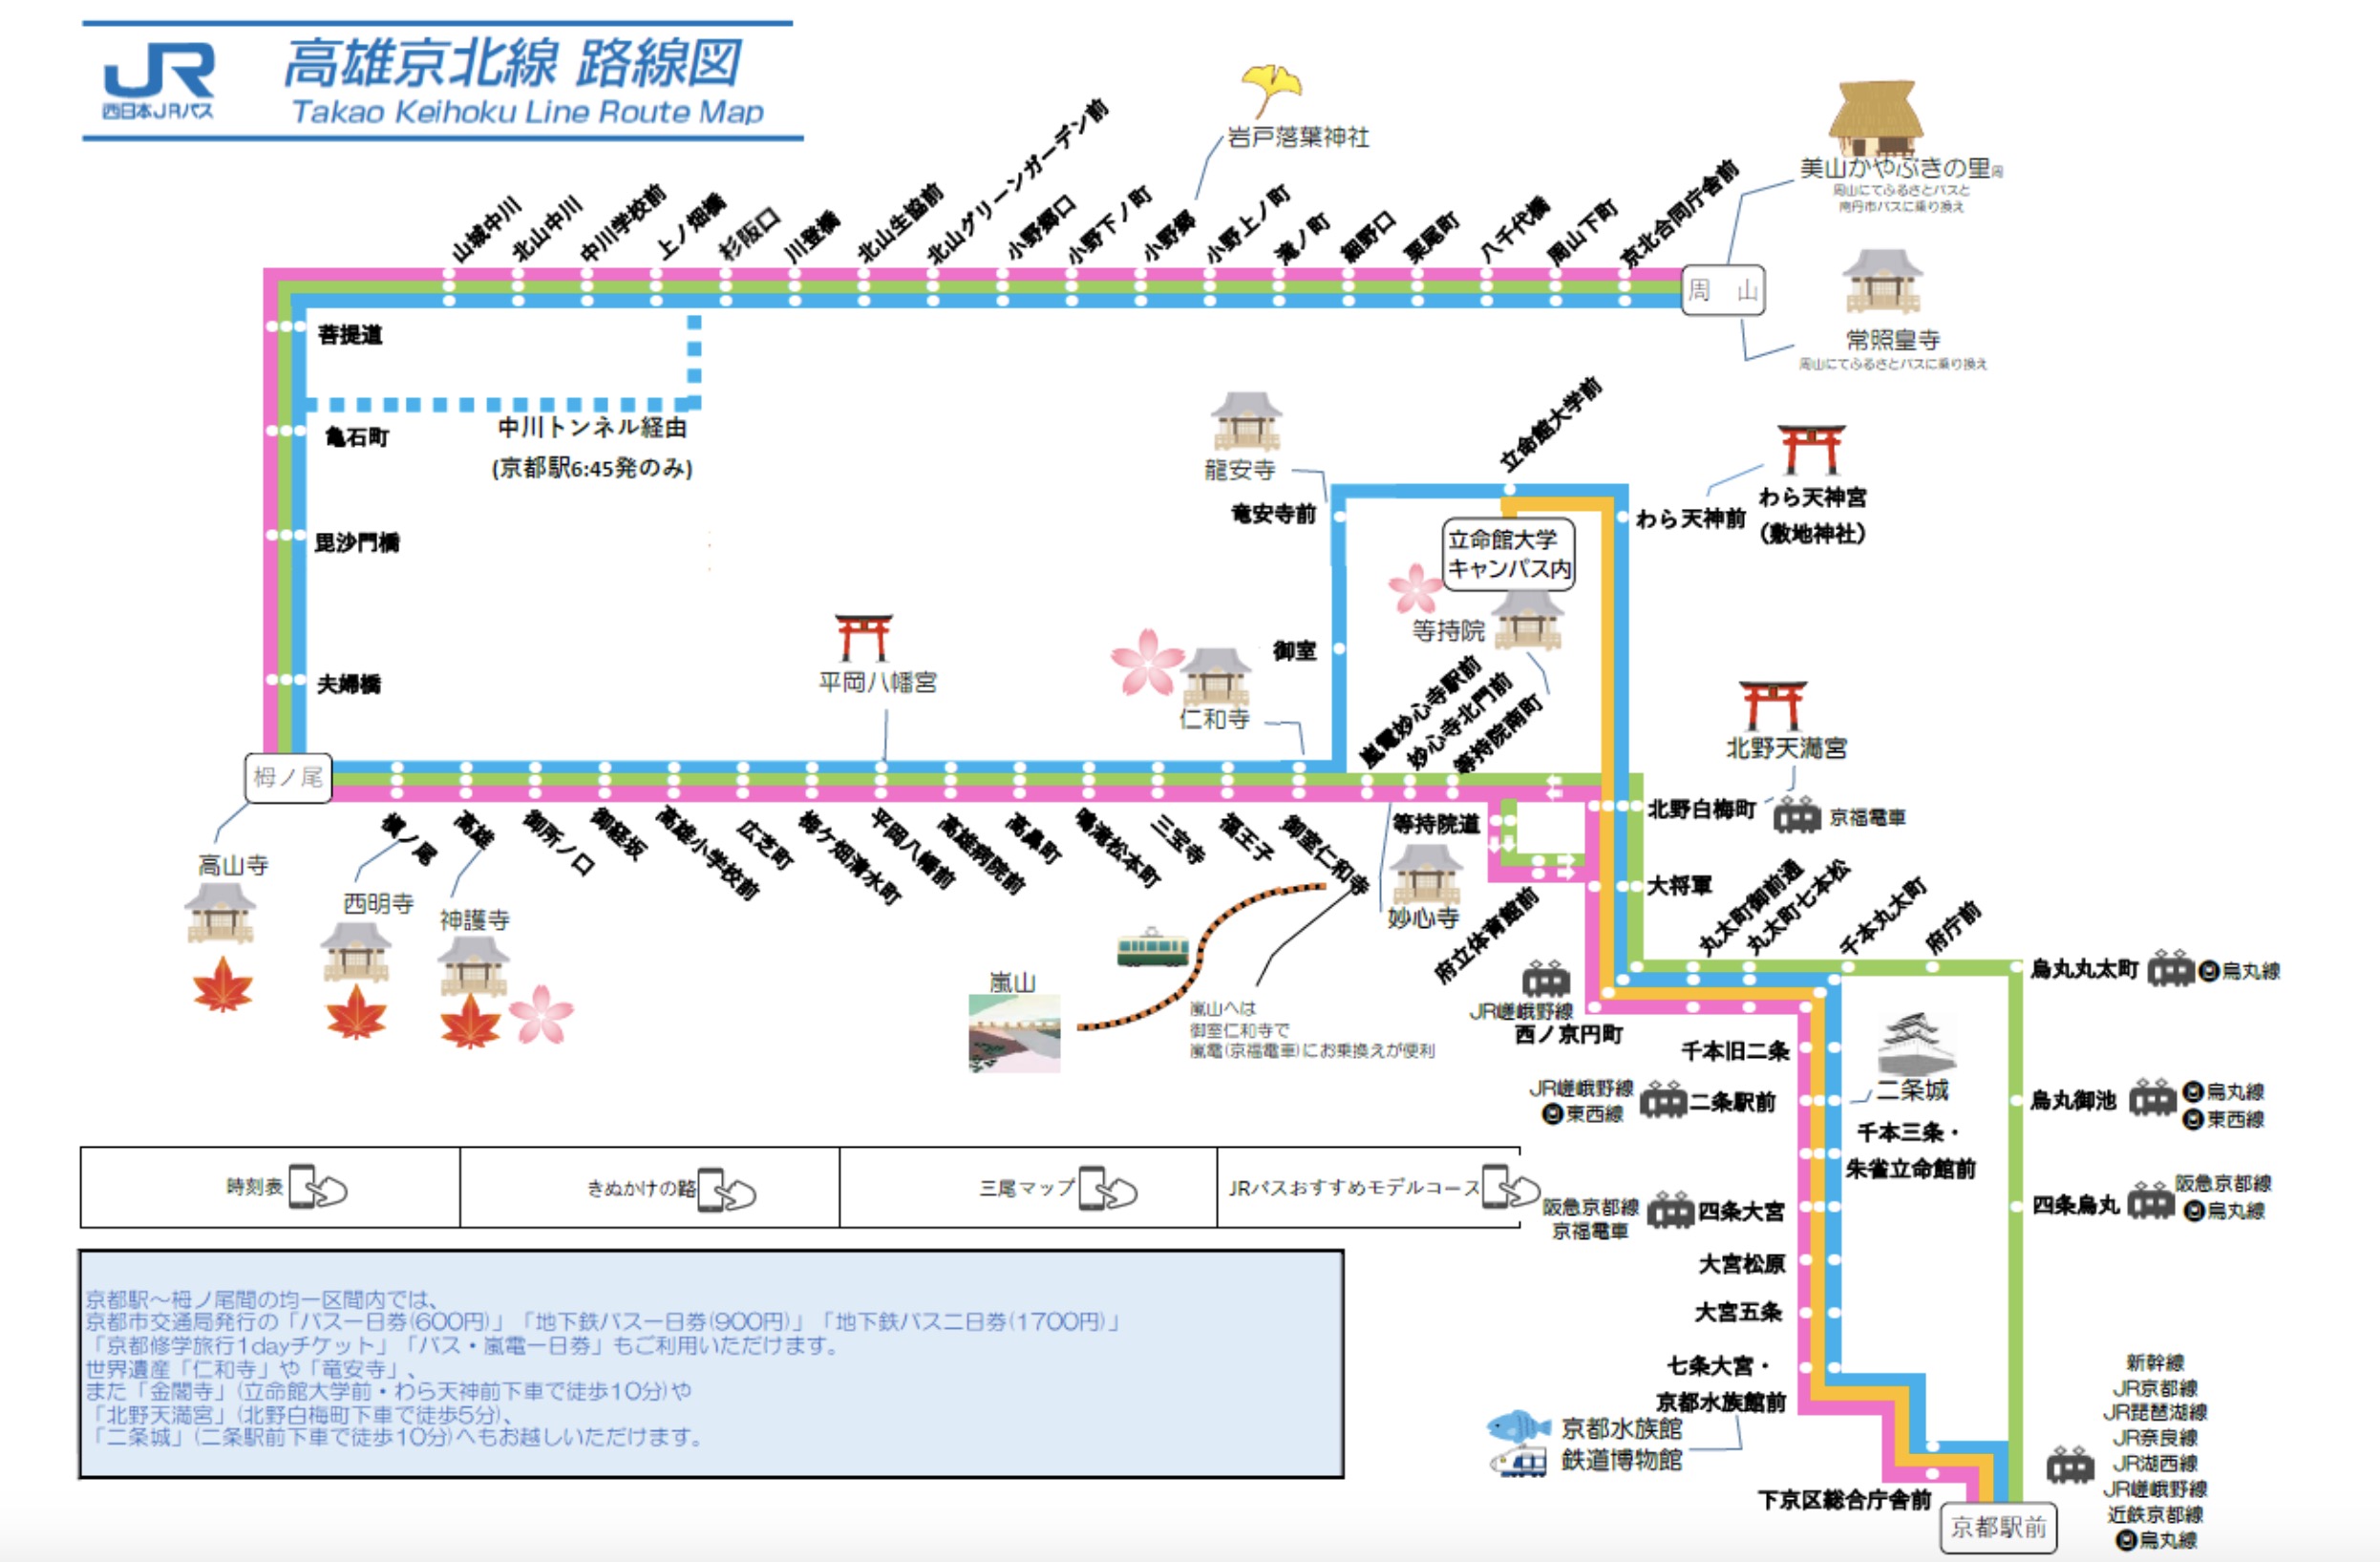 京都地下鐵巴士一日券|使用區間、購買方式、該不該買